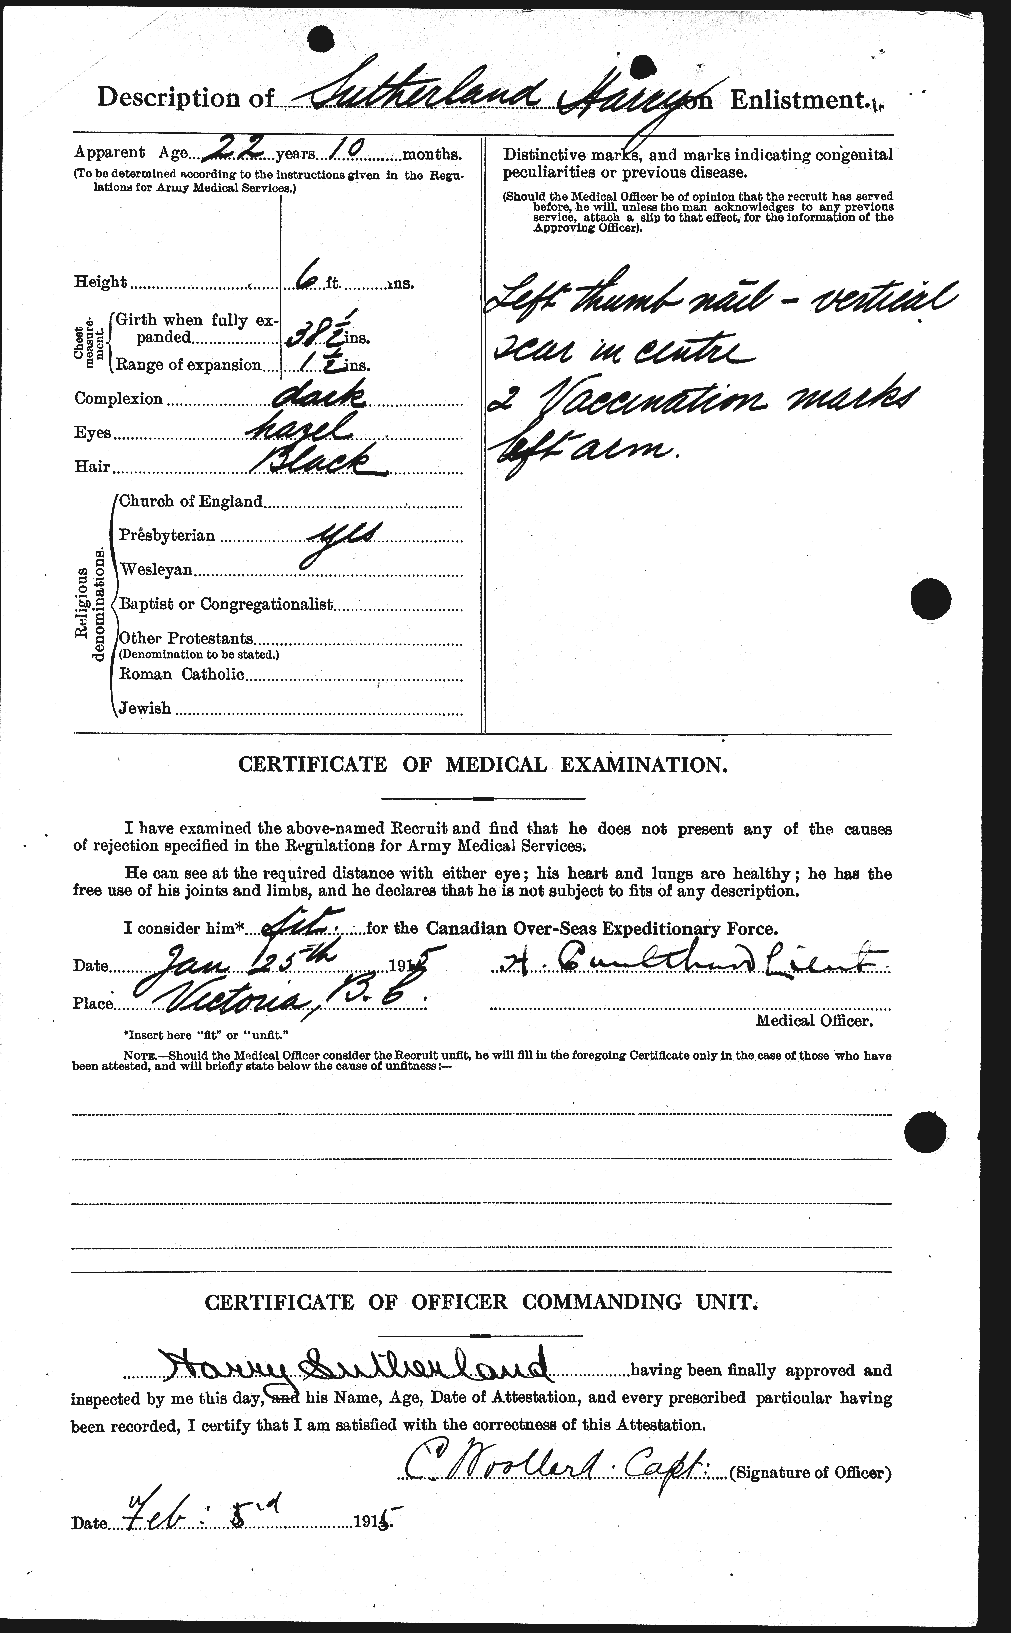 Dossiers du Personnel de la Première Guerre mondiale - CEC 124818b